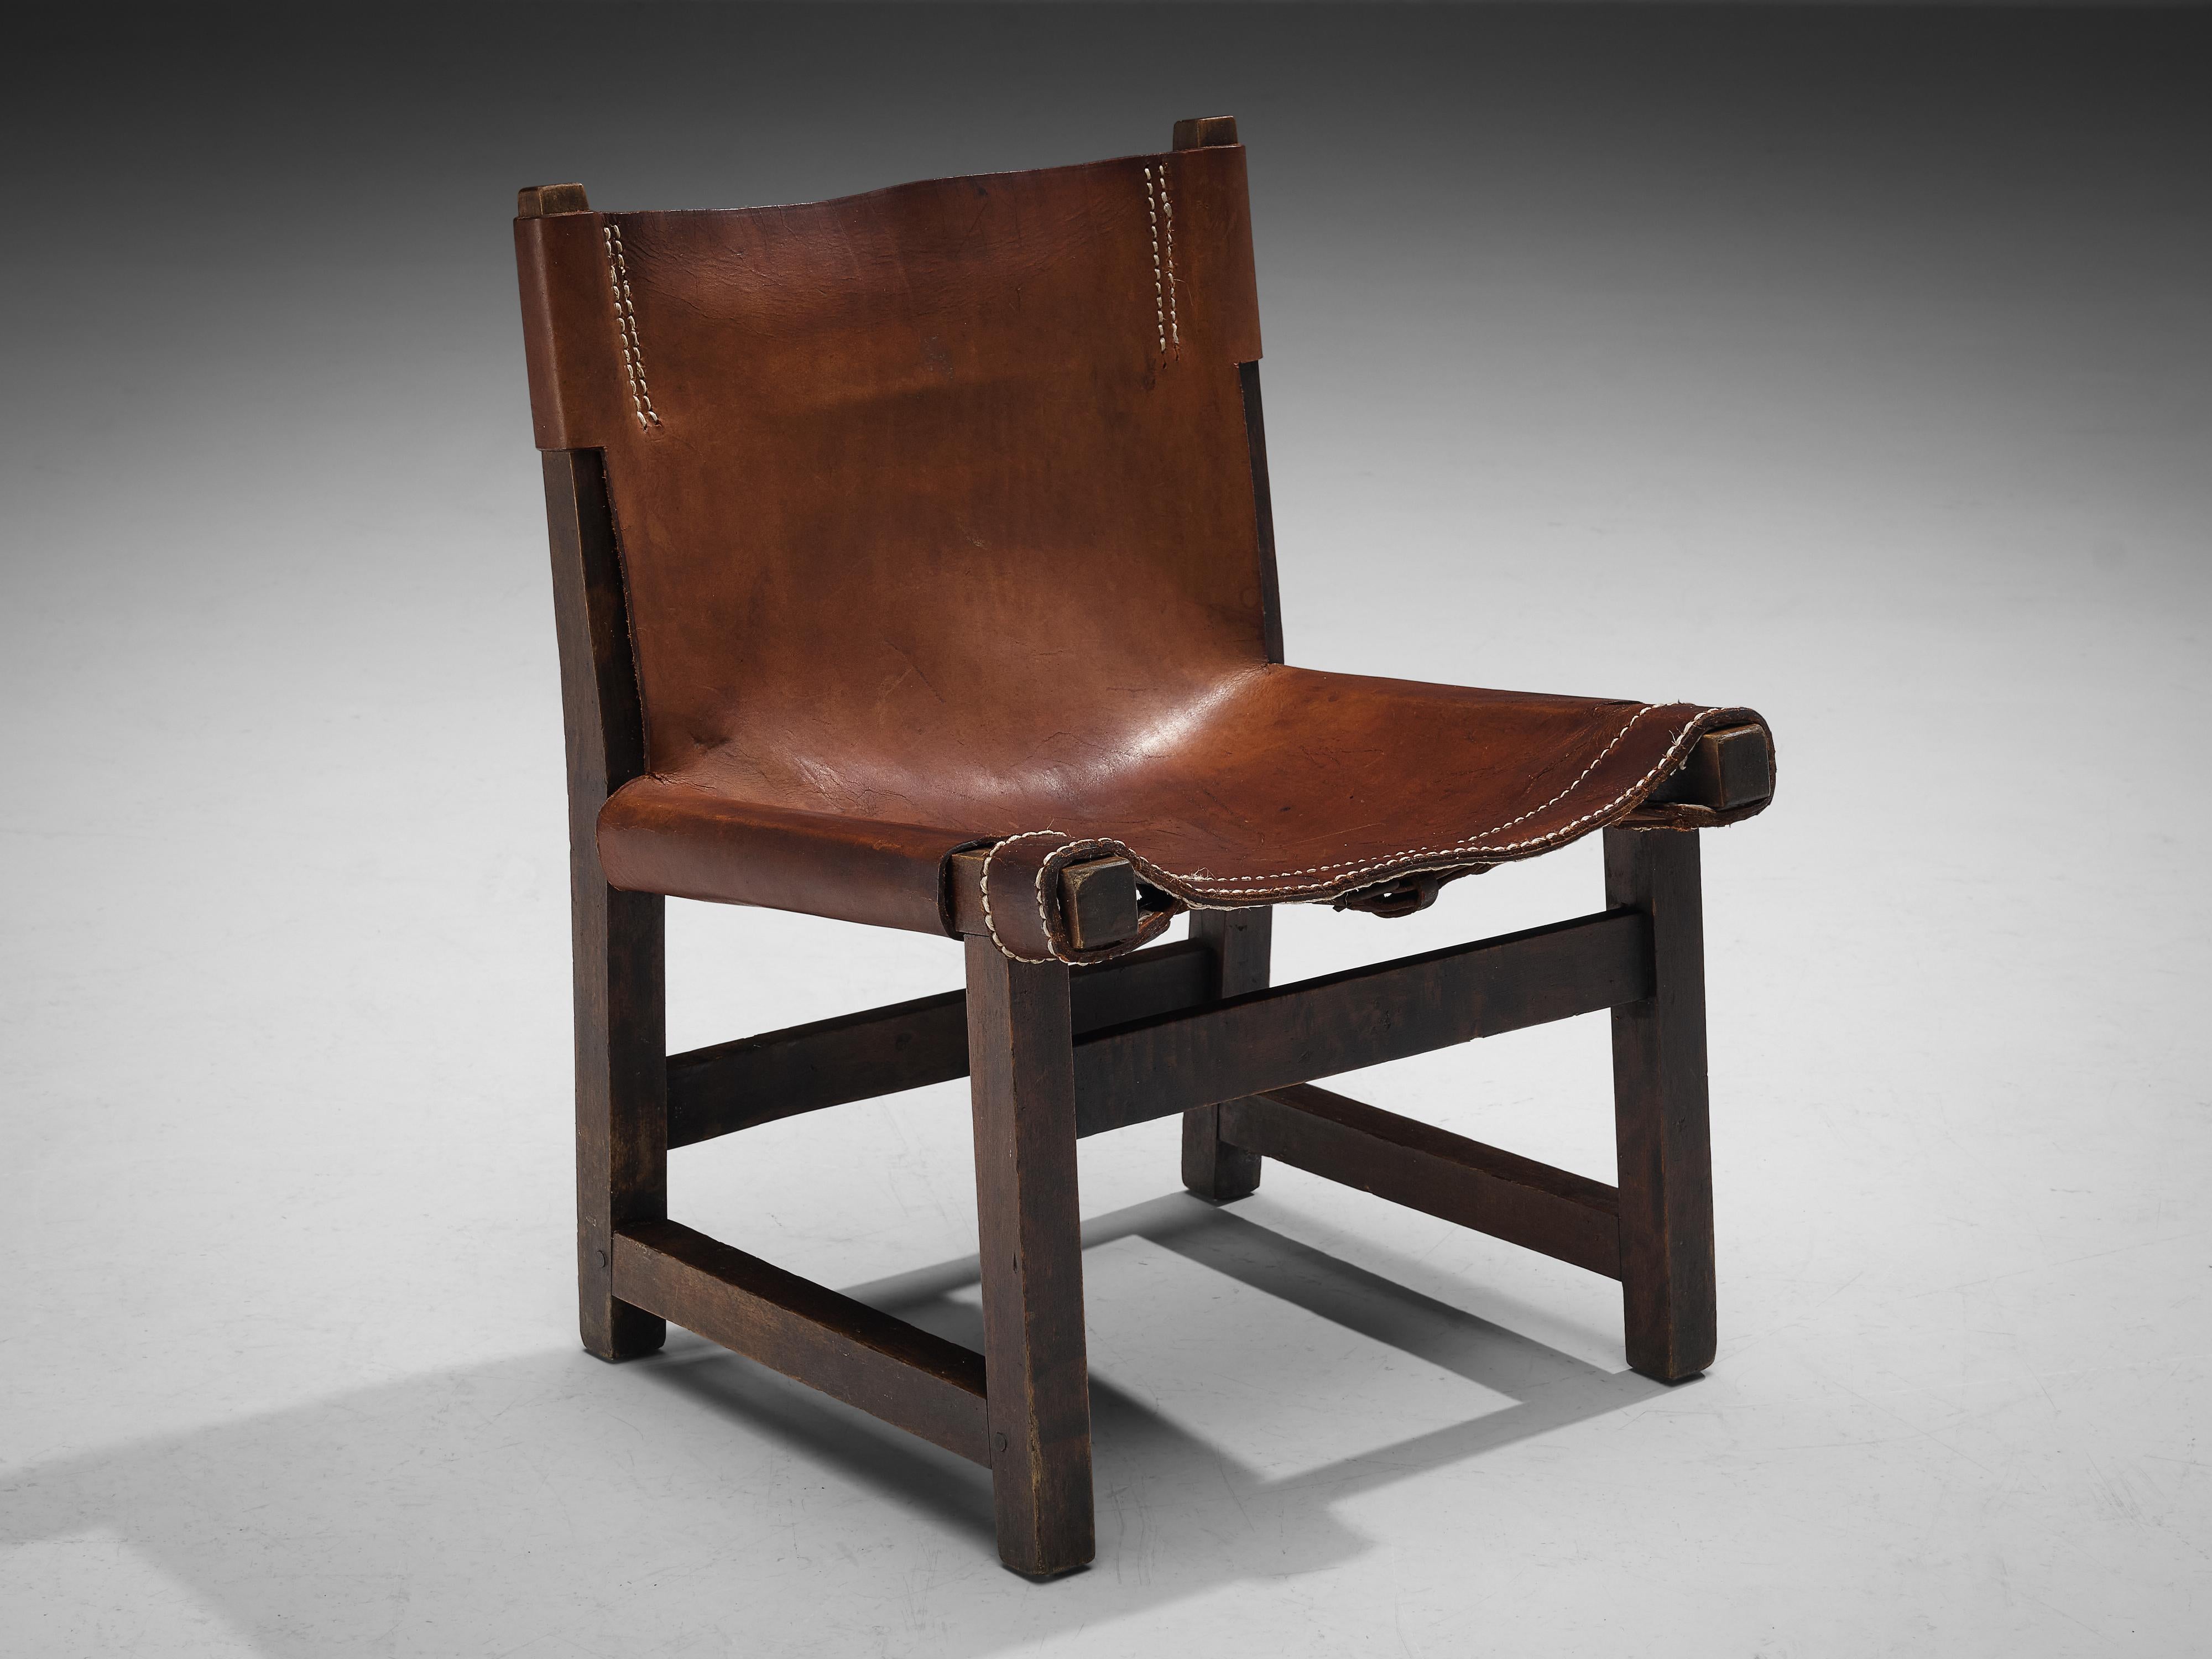 Paco Muñoz pour Darro, chaise pour enfants 'Riaza', samara, cuir, métal, Espagne, années 1960

Cette chaise longue basse, solide et robuste, a été conçue par Paco Muñoz dans les années 60. Le design de cette chaise de chasse, avec son cuir lâchement